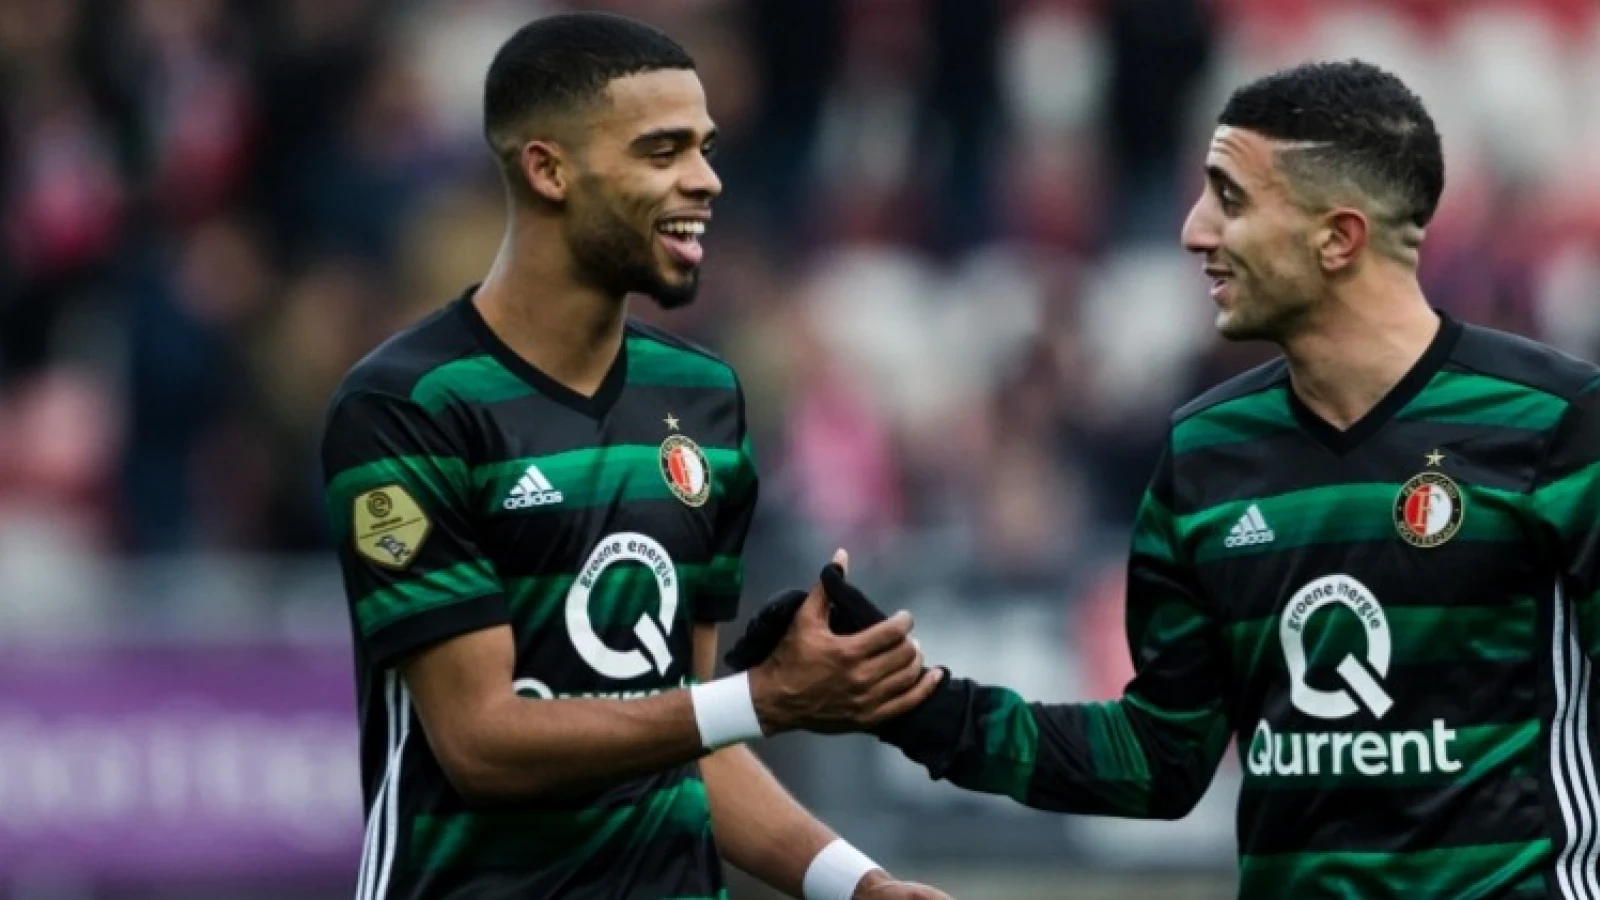  Onrust bij Feyenoord: 'Opnieuw wil speler club uit onvrede verlaten'